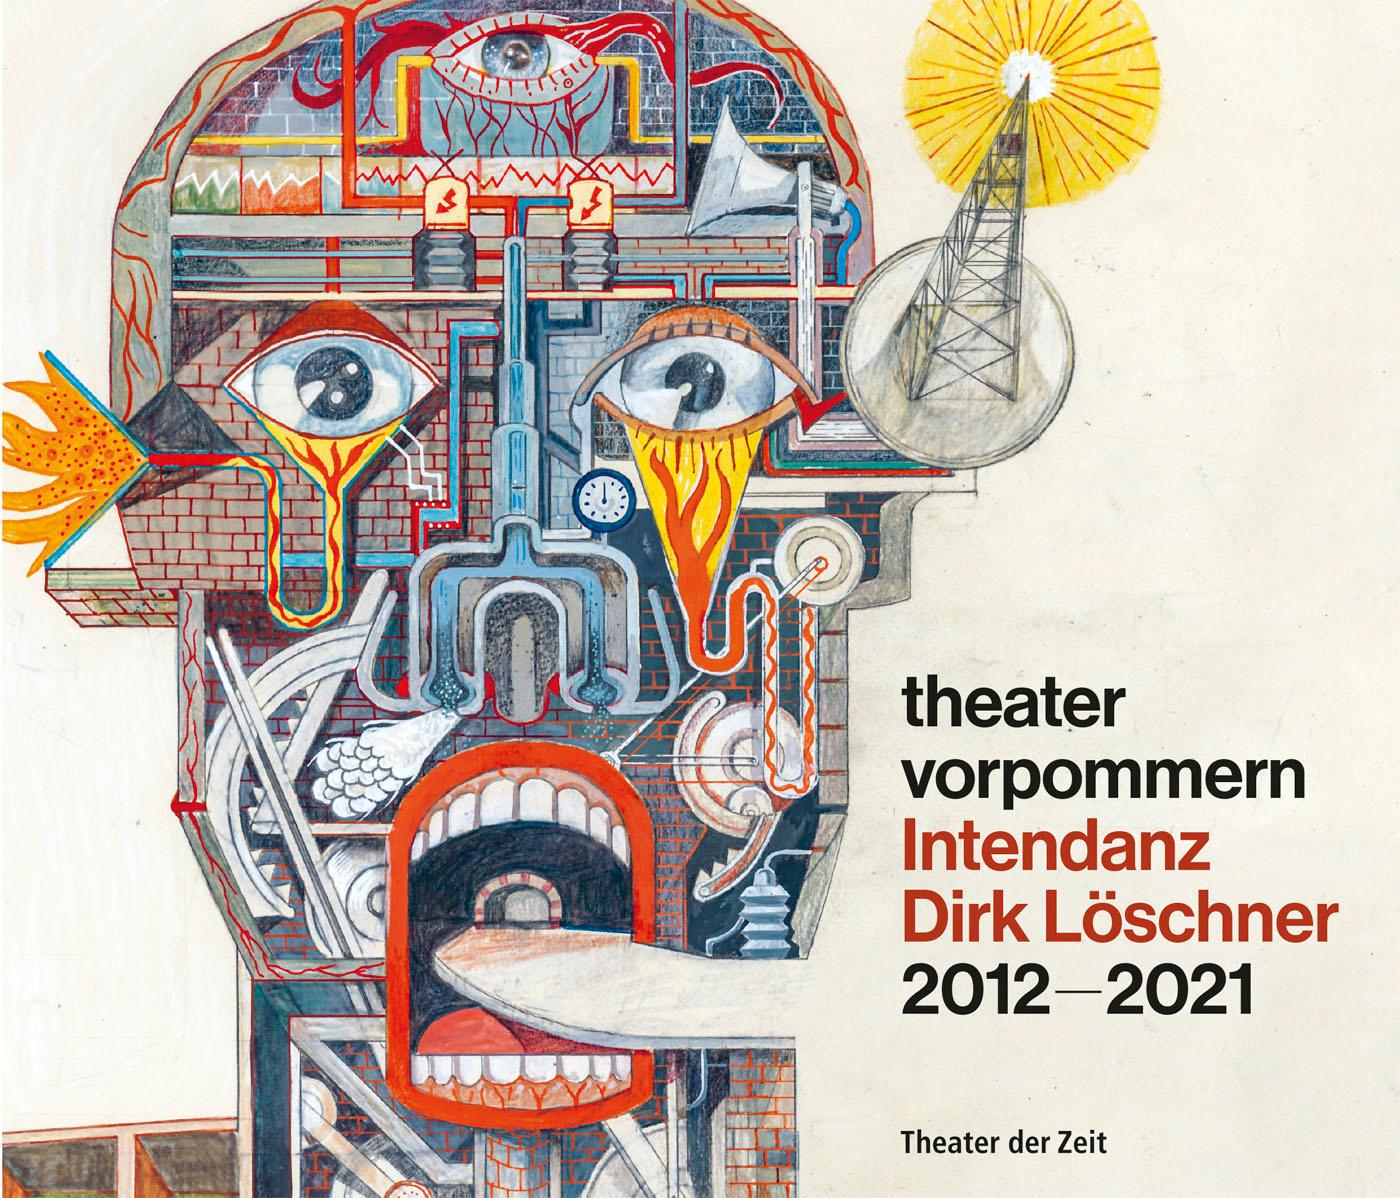 "Theater Vorpommern"